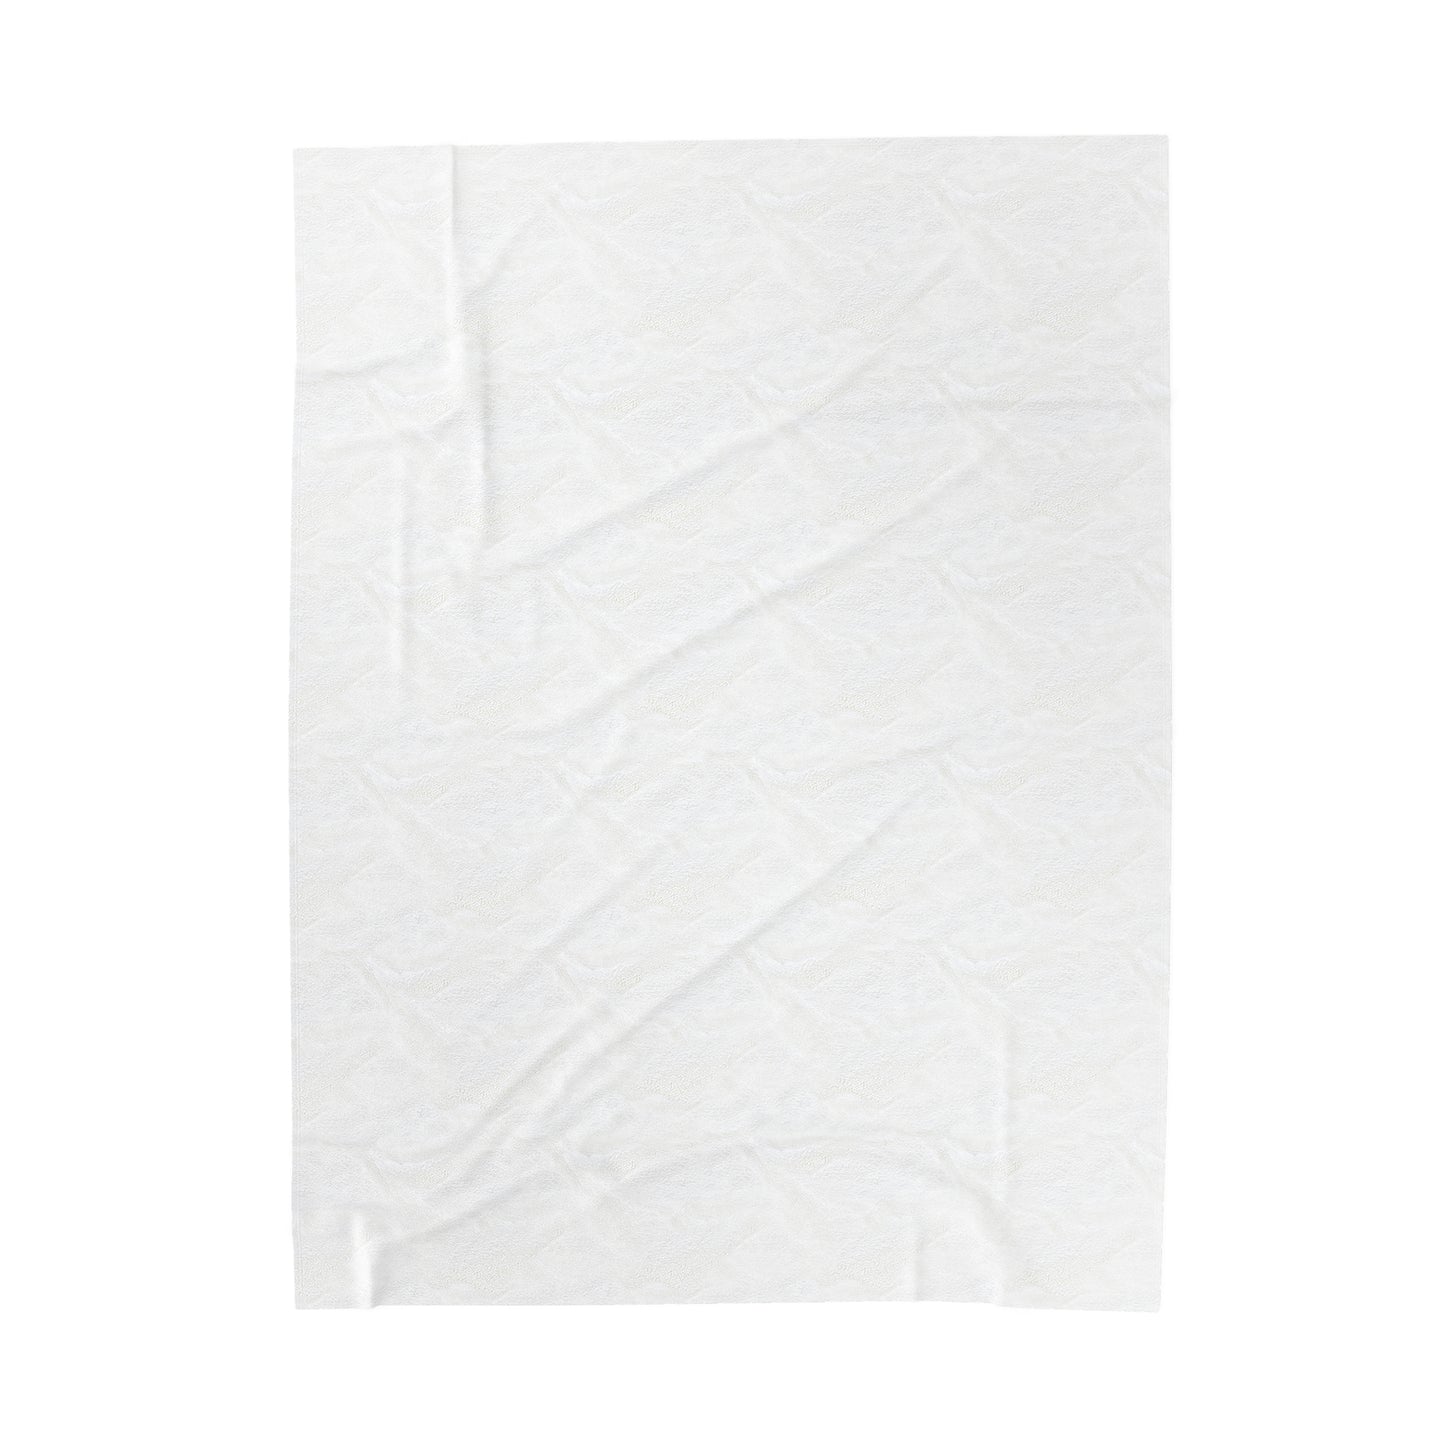 Velveteen Blanket - Moonstone White